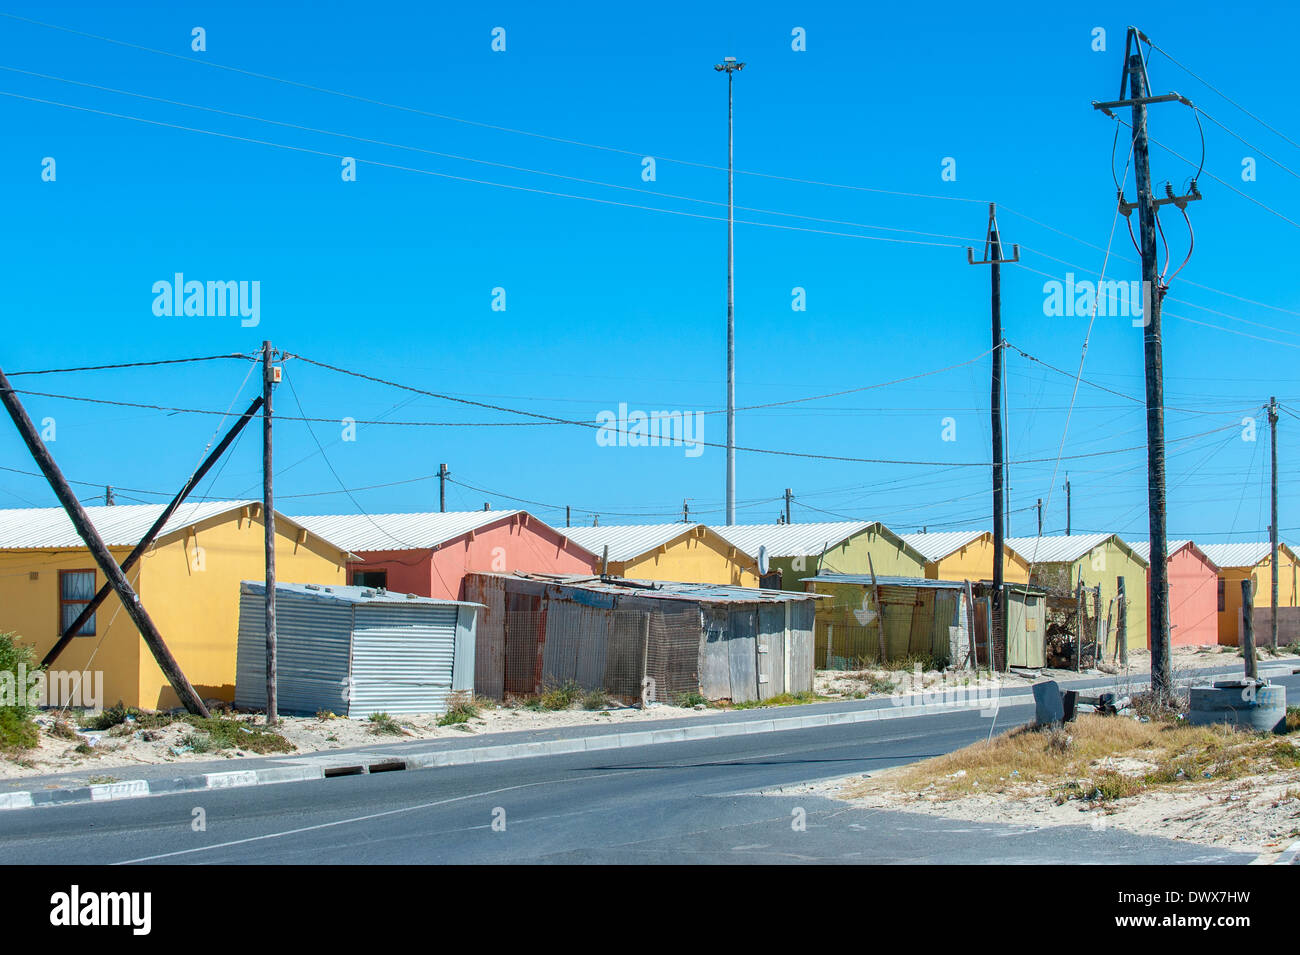 Wohnprojekt in Khayelitsha, Kapstadt, Western Cape, Südafrika Stockfoto